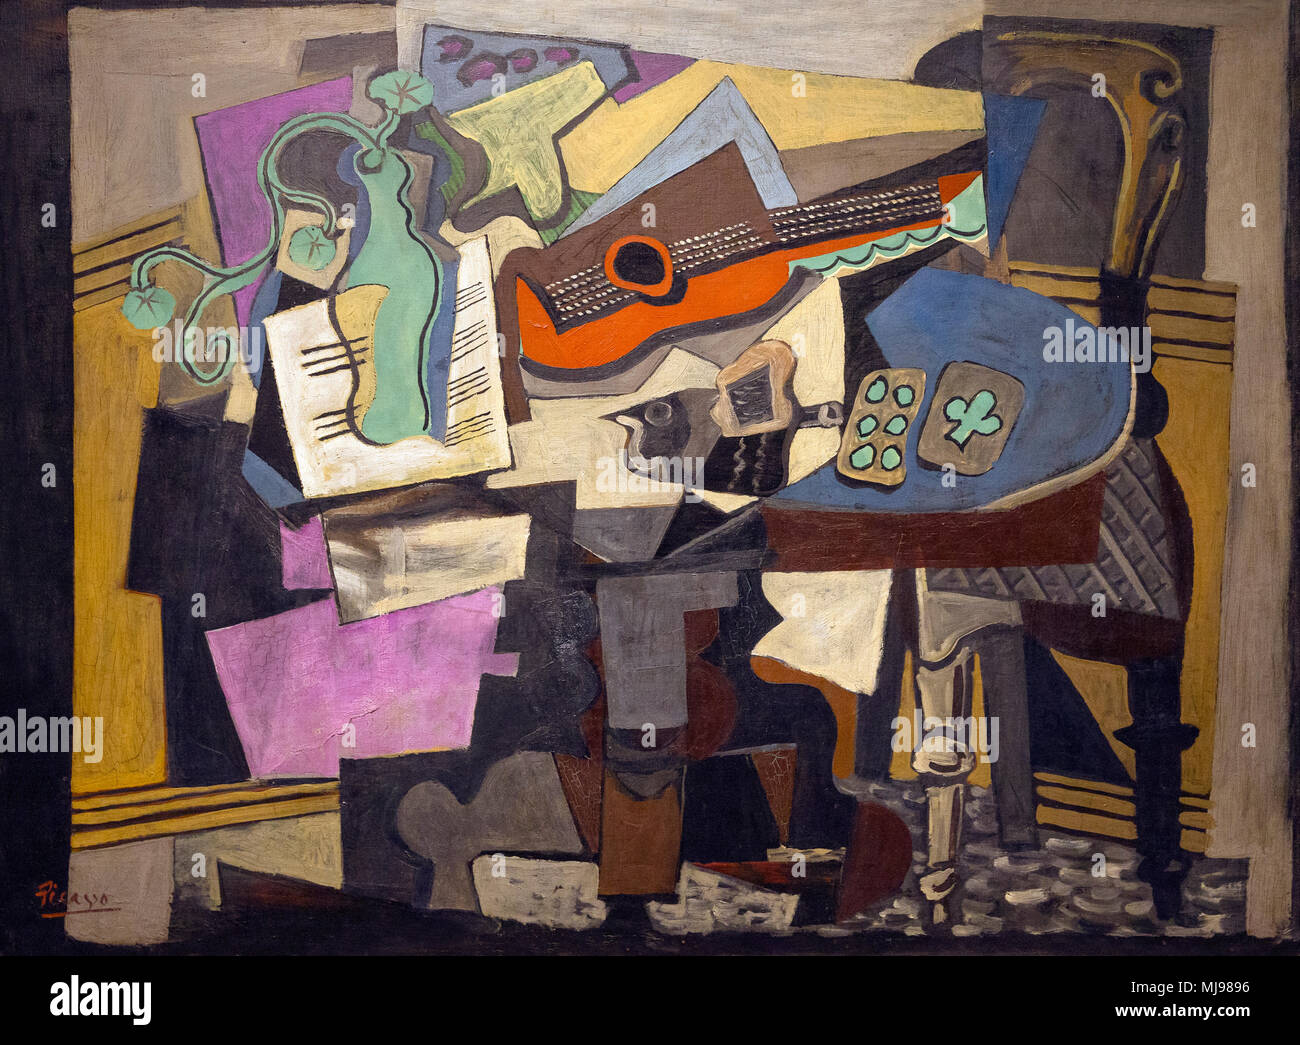 STILL Life, Pablo Picasso, 1918, National Gallery of Art, Washington DC, Etats-Unis, Amérique du Nord Banque D'Images